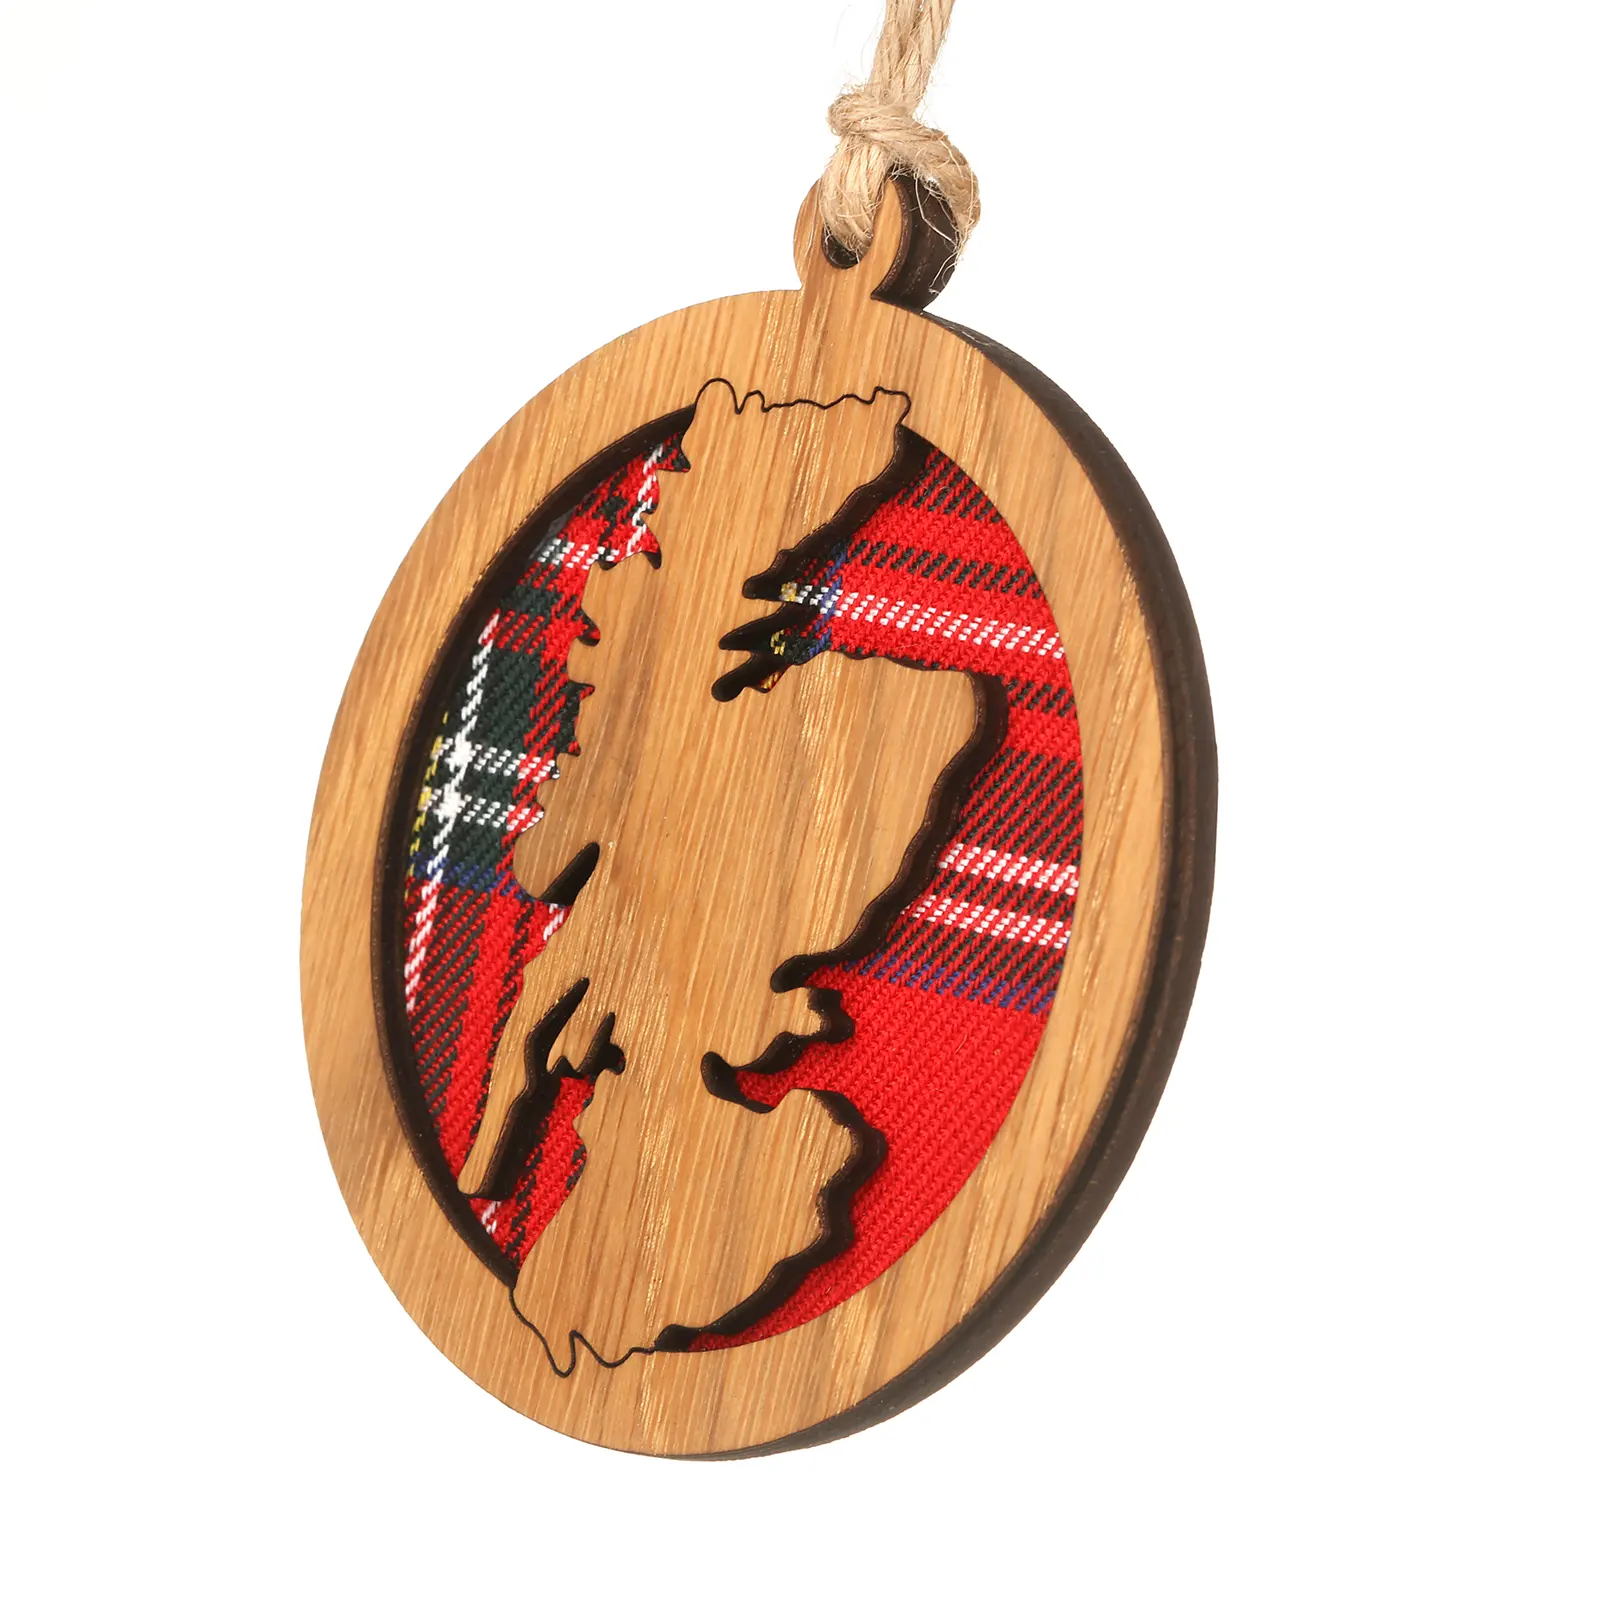 Map of Scotland - Runder Holz-Aufhänger mit Schottland-Karte Knoten und Tartan-Hintergrund